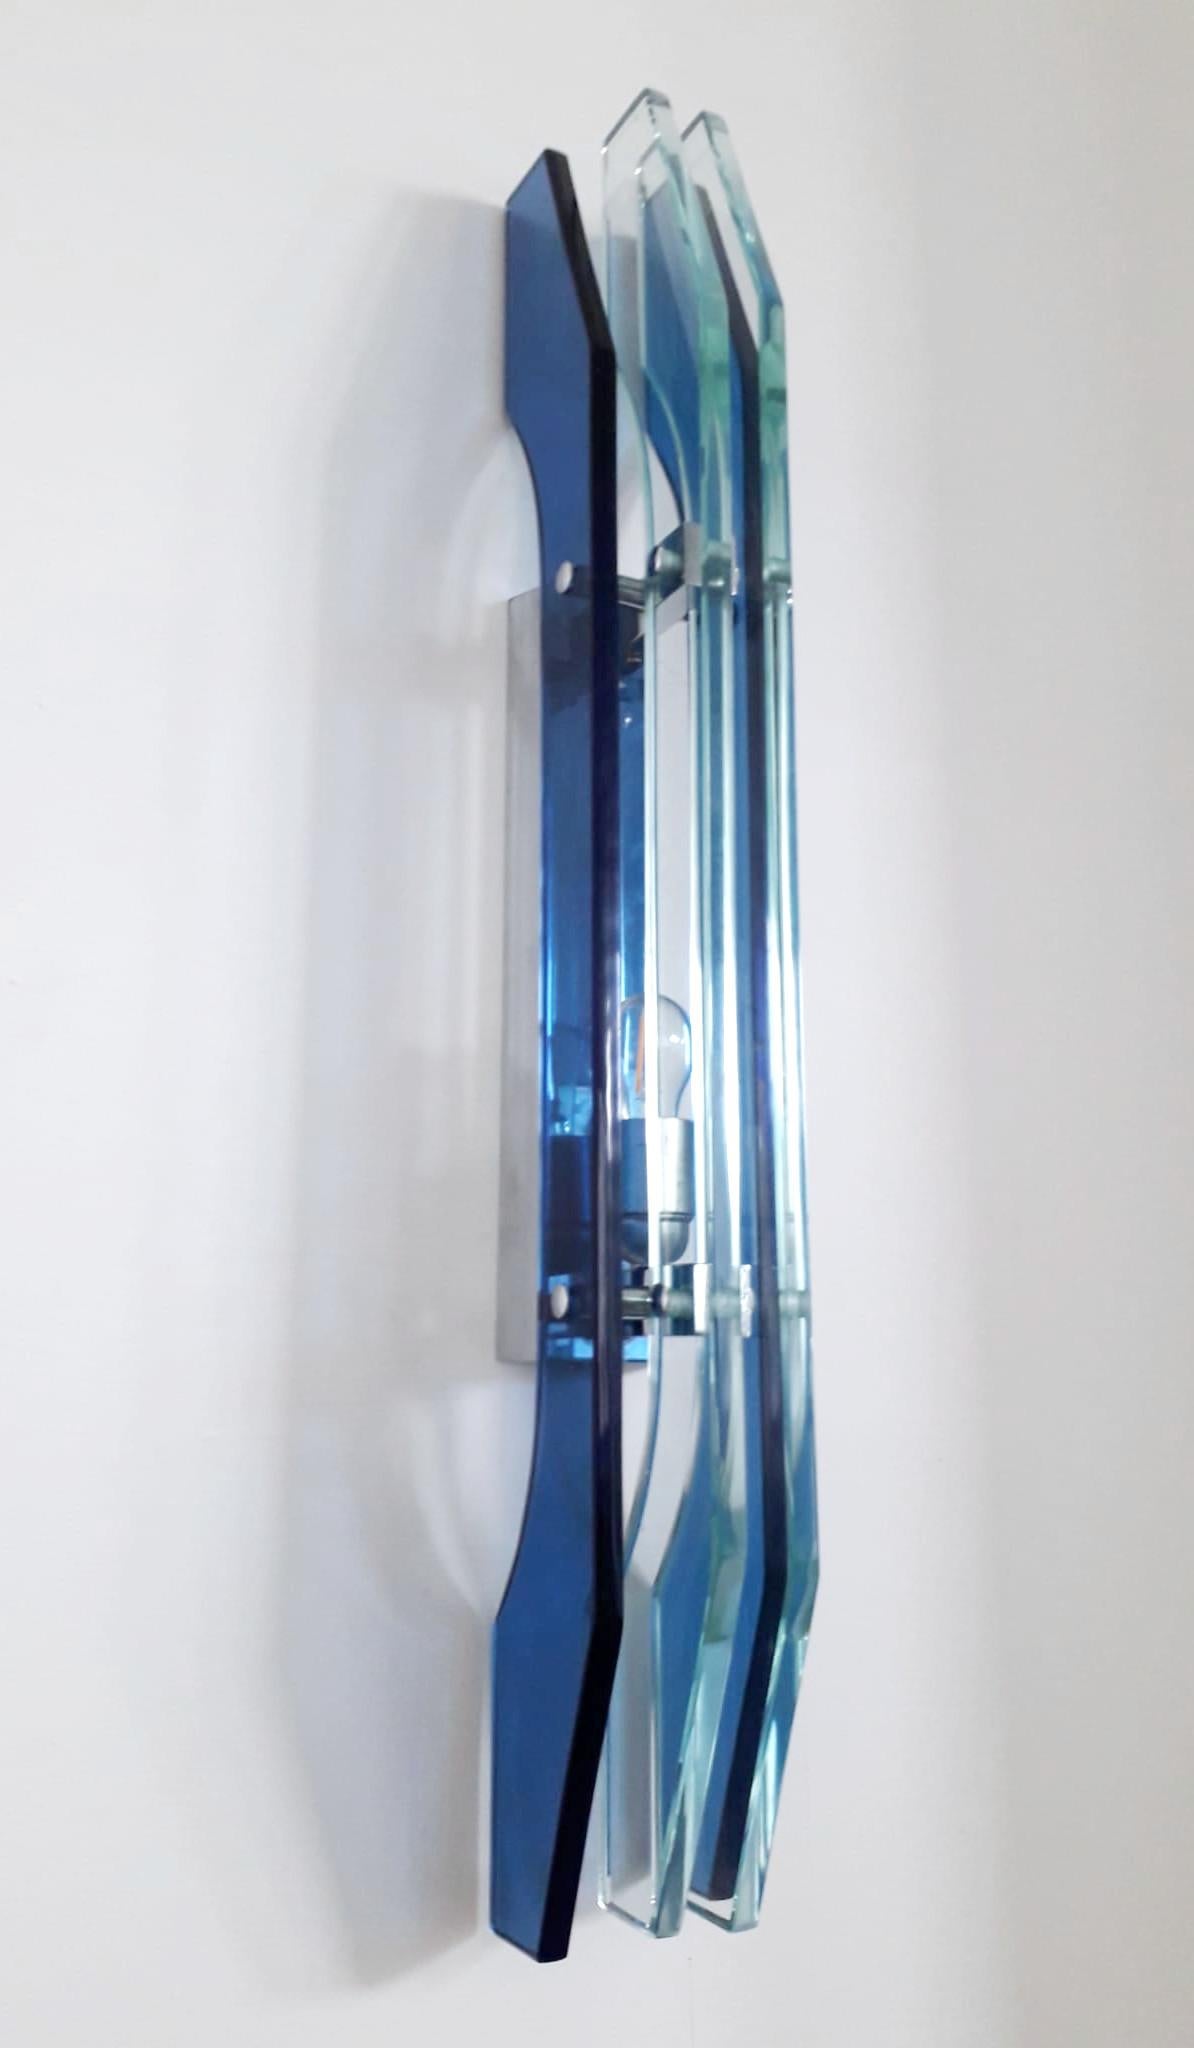 Seltene italienische Vintage-Wandleuchten, jede mit vier großen blauen und klaren abgeschrägten Glasscheiben auf einem Nickelrahmen / Made in Italy, ca. 1960er Jahre
1 Leuchte / Typ E26 oder E27 / max. 60W
Maße: Höhe 28 Zoll / Breite 3,5 Zoll /